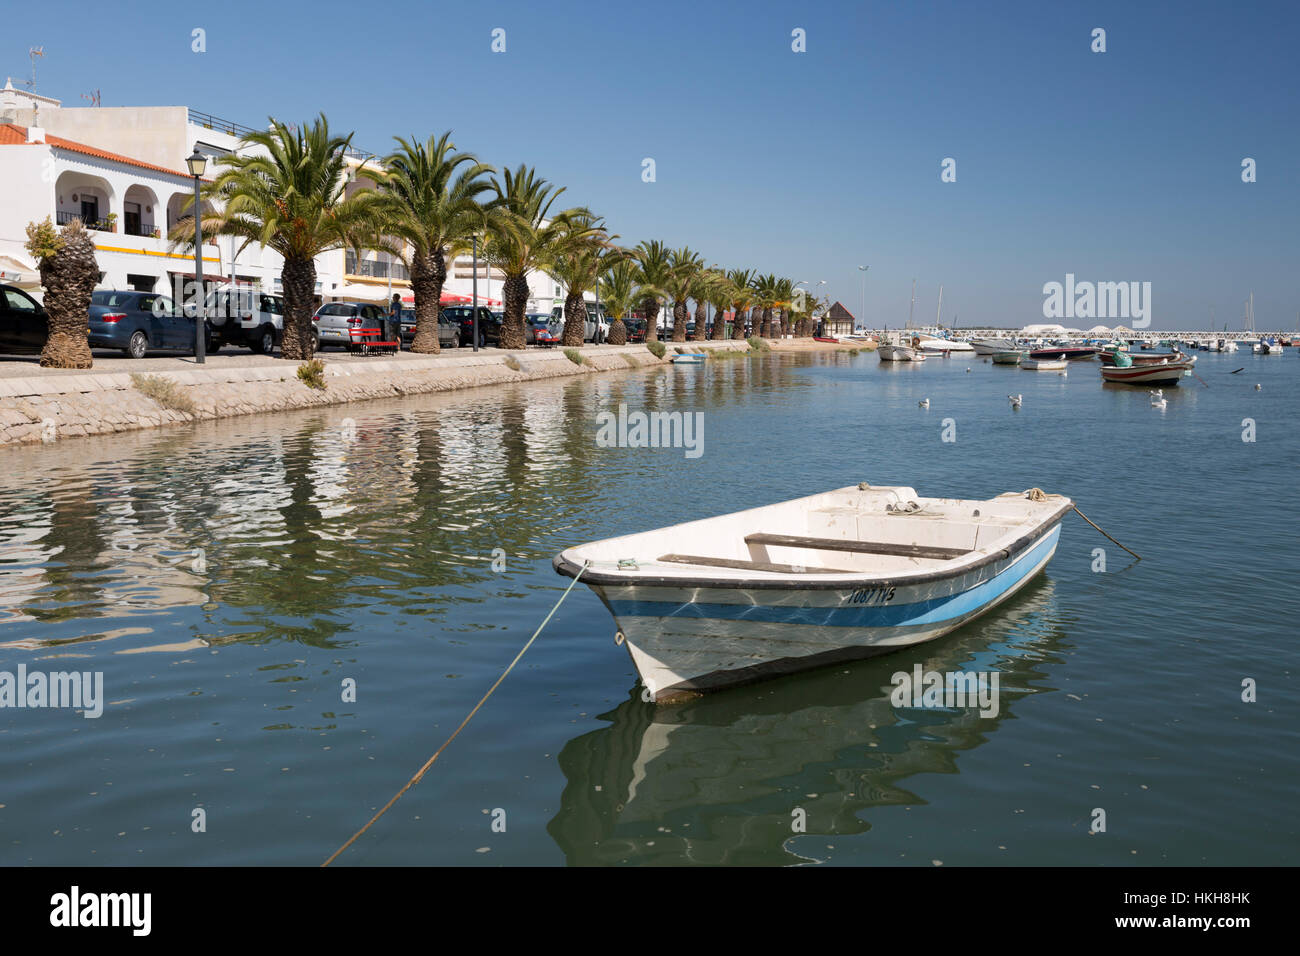 Paseo marítimo cubierto de palmeras de pueblo pesquero conocido como capital de pulpo (capital do polvo), Santa Luzia, Algarve, Portugal, Europa Foto de stock